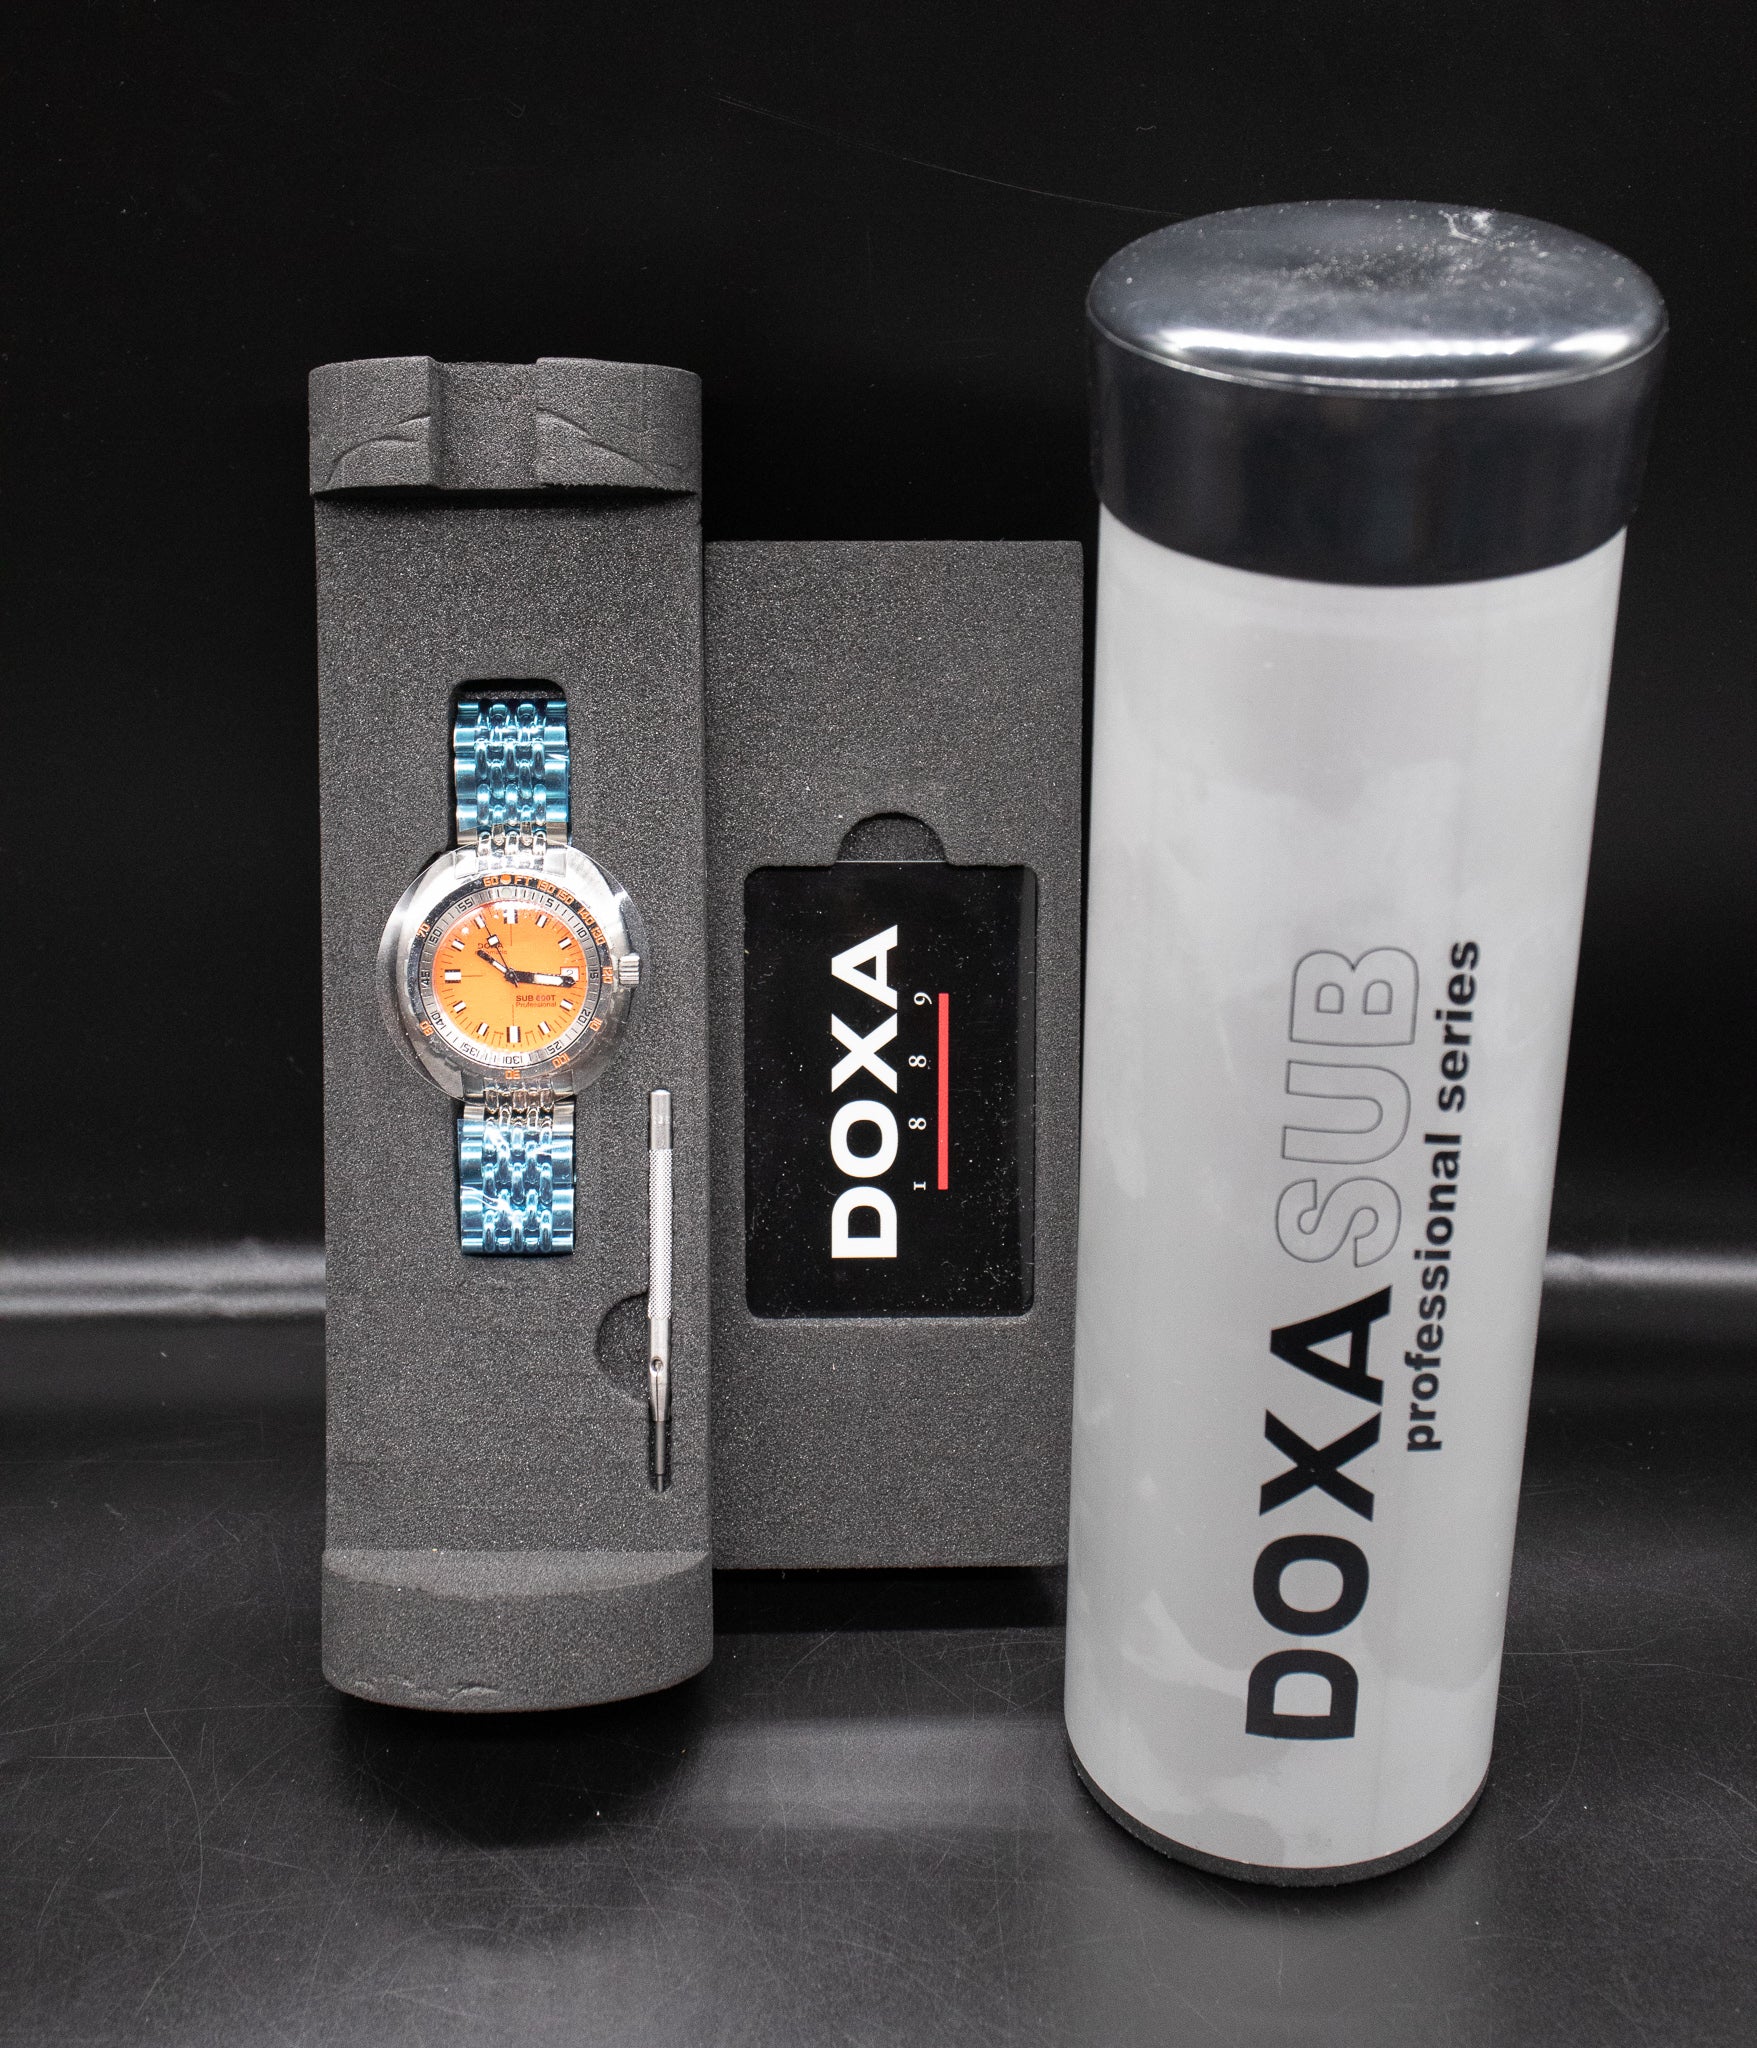 Doxa Sub 600T Professional